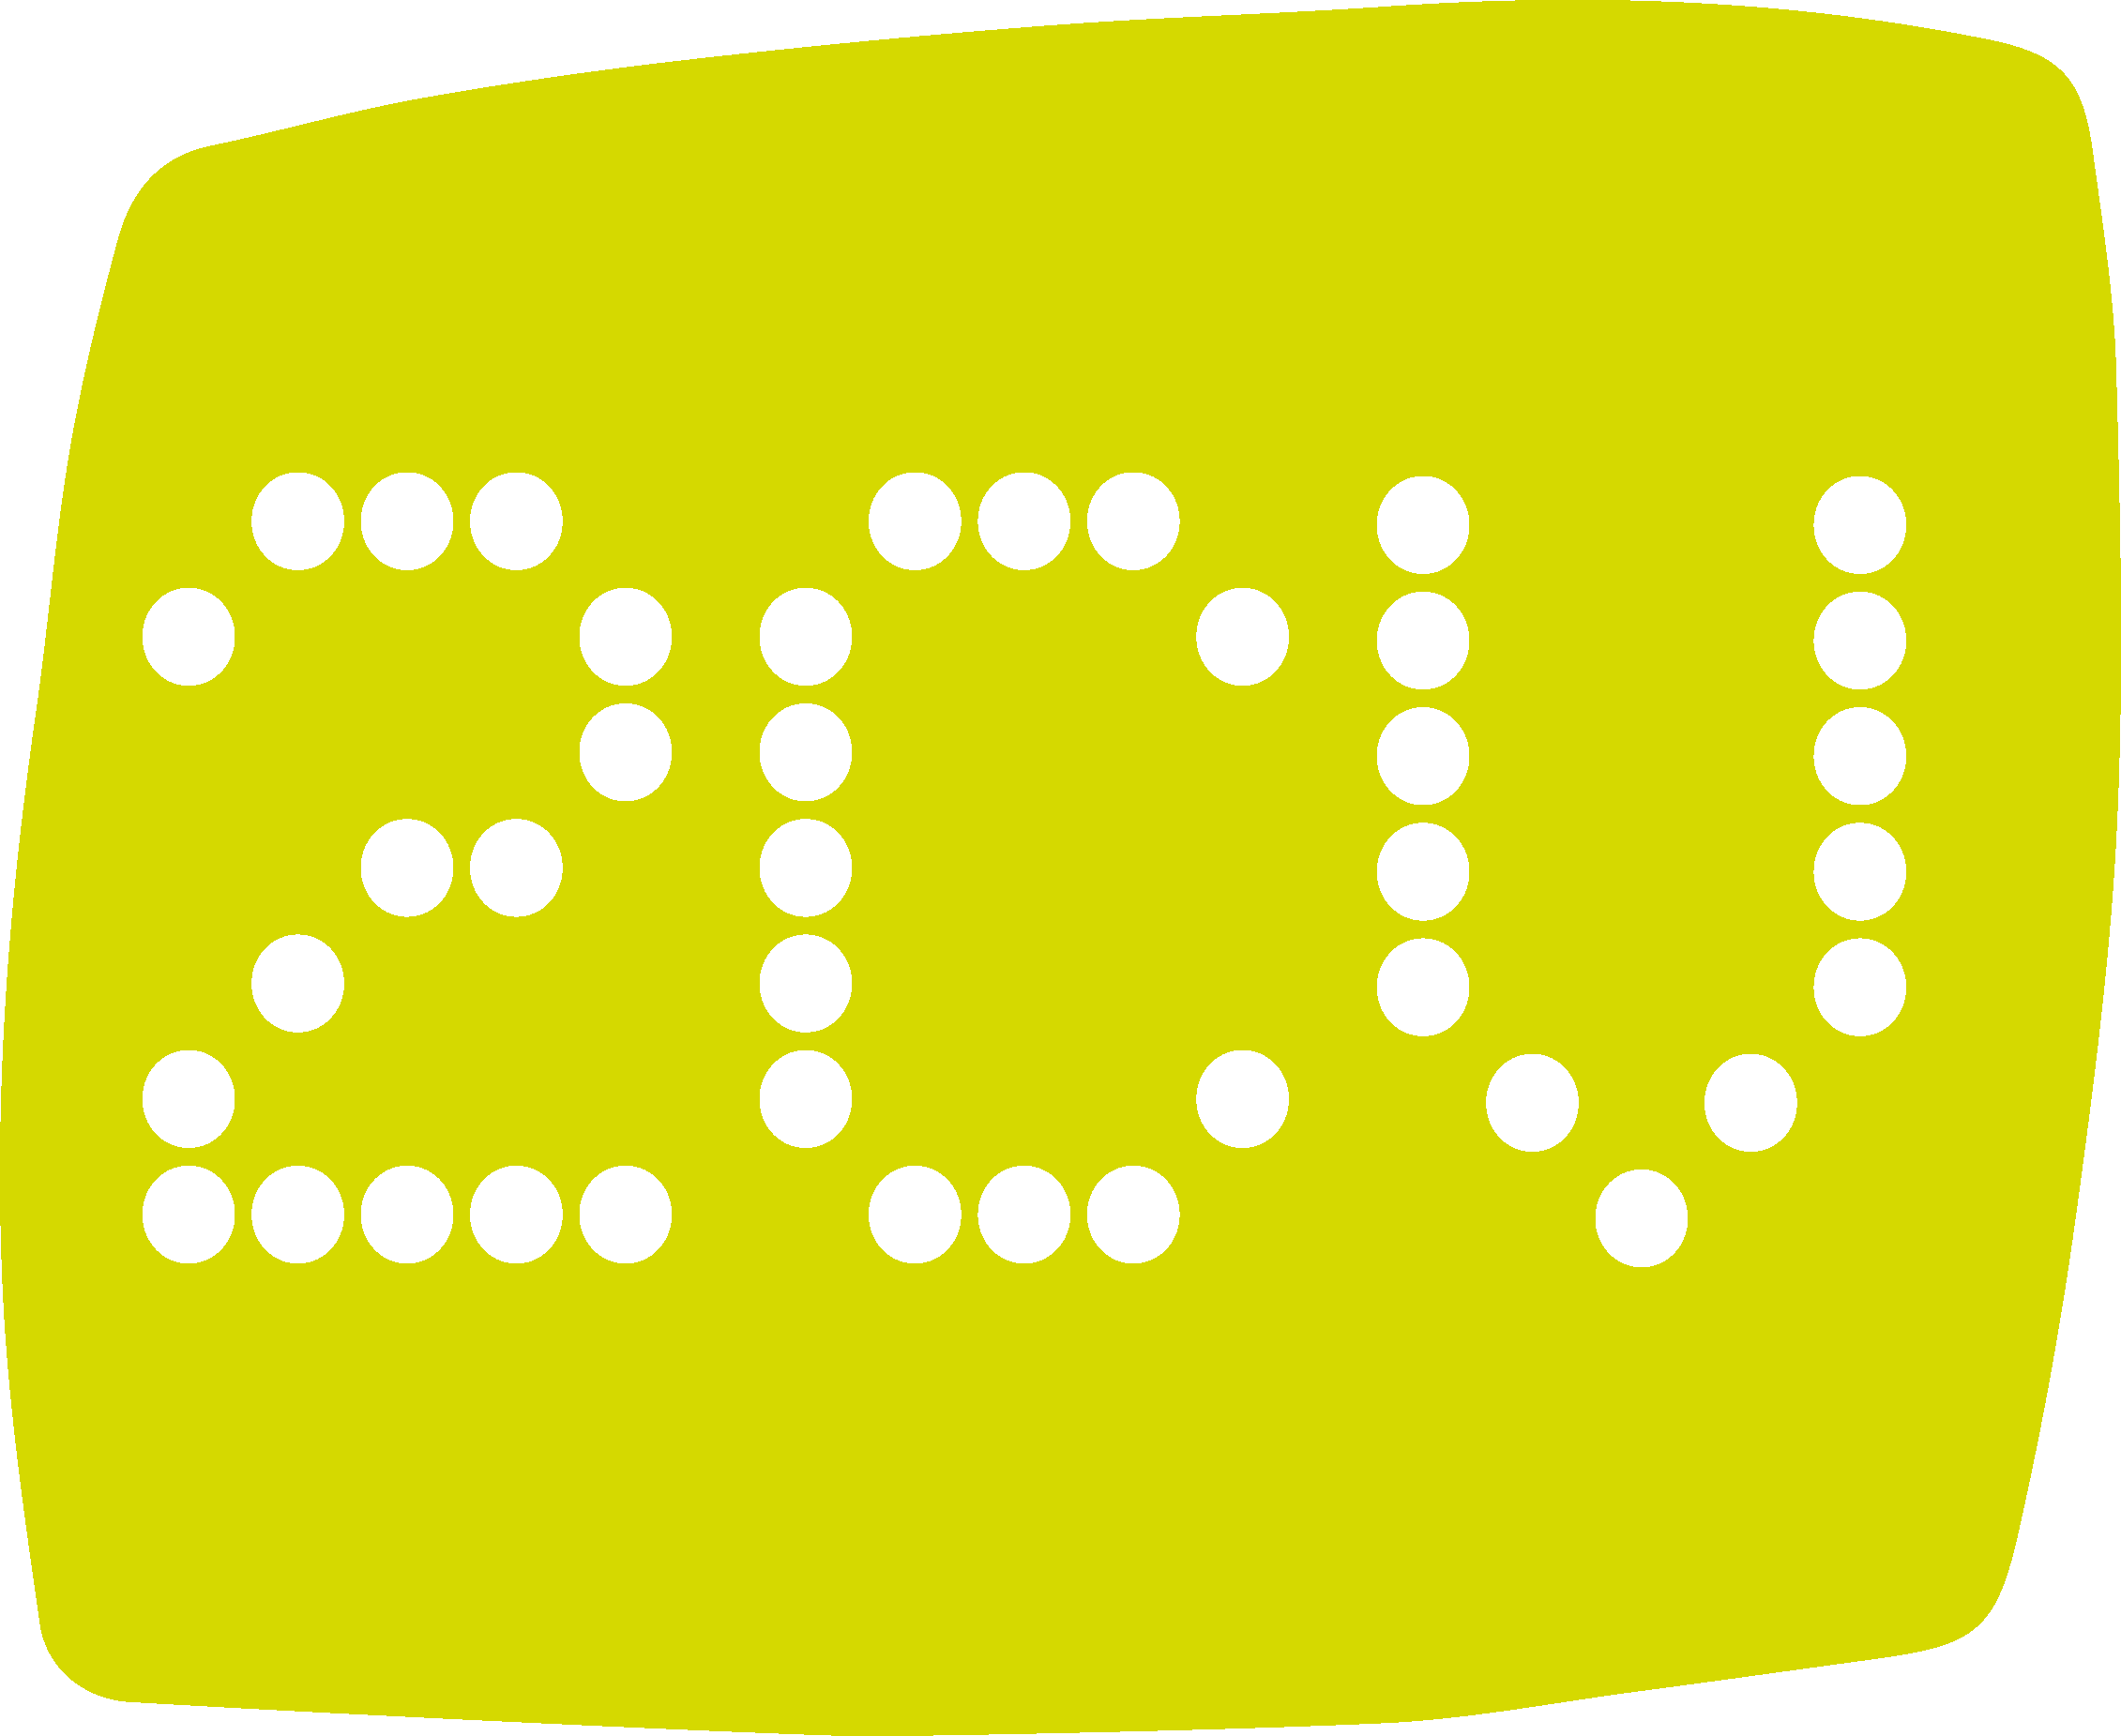 2CV Logo